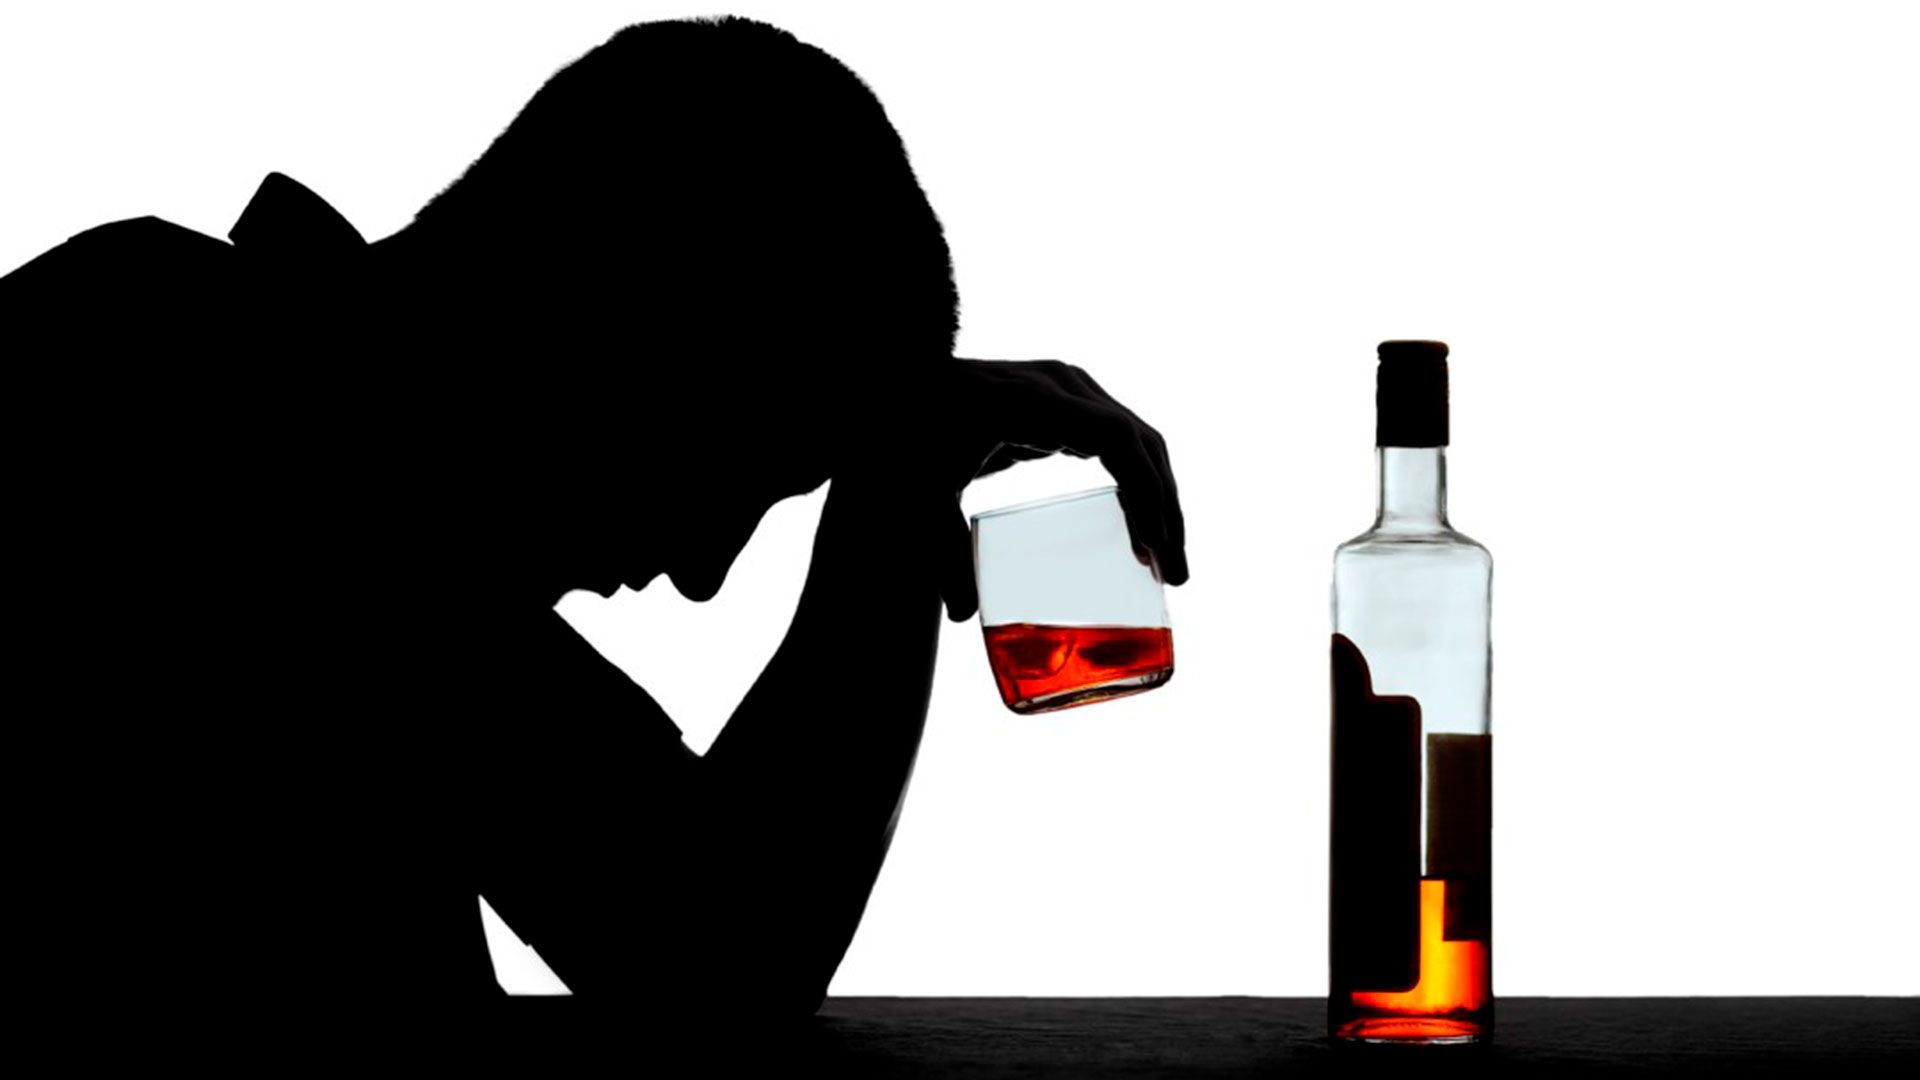 El atracón de alcohol o binge drinking busca alcanzar el estado de embriaguez en el menor tiempo posible